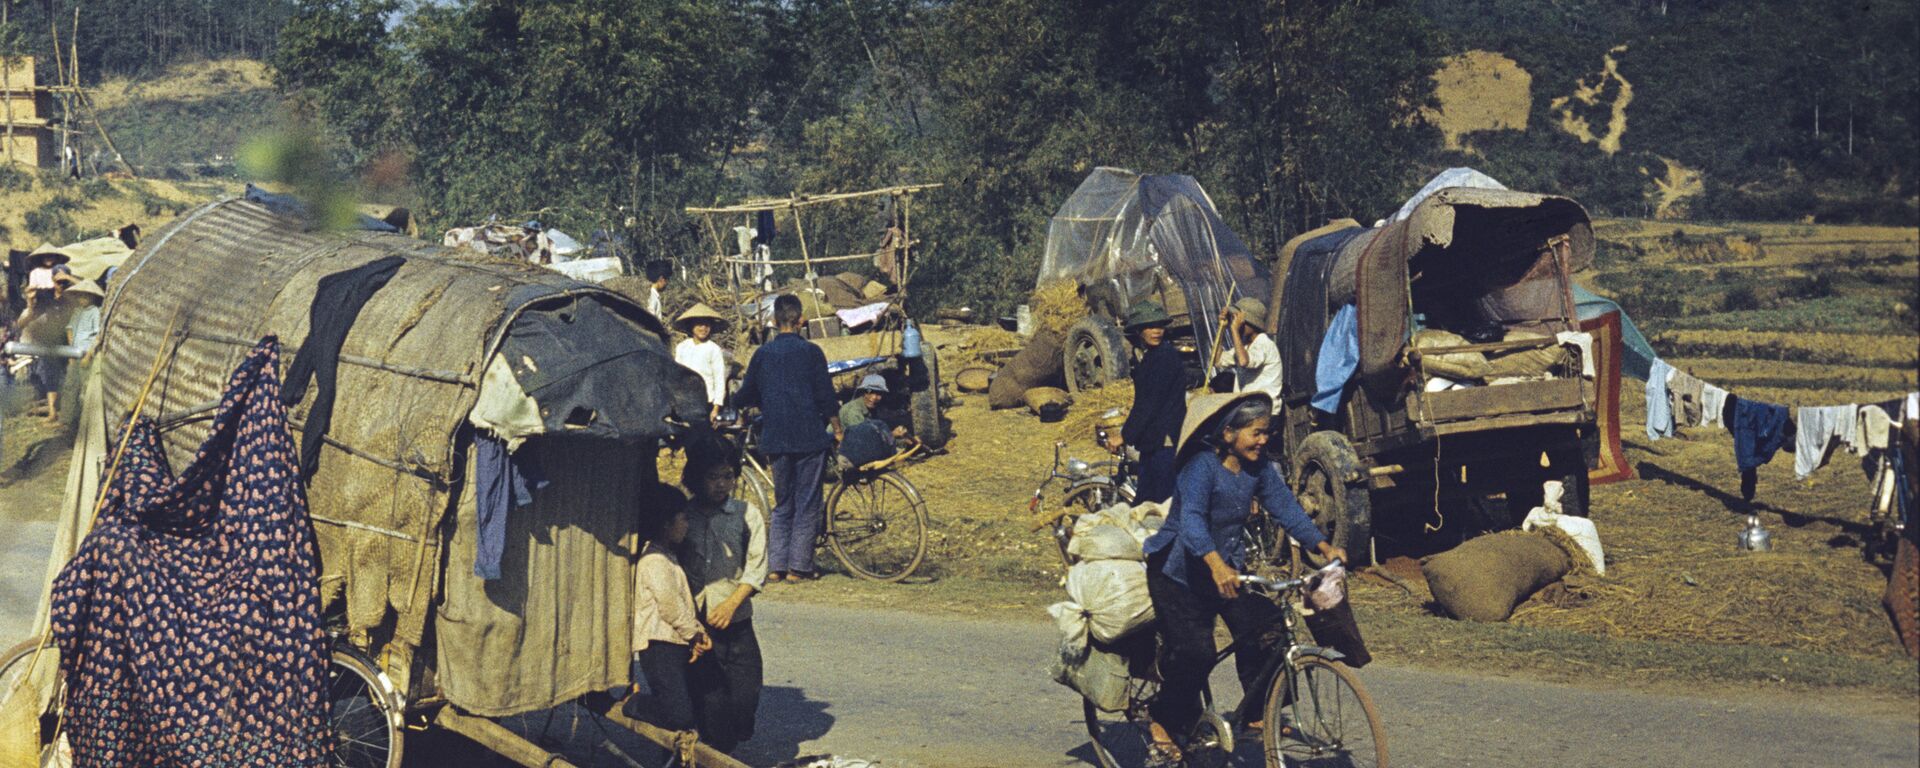 Xung đột vũ trang giữa Việt Nam và Trung Quốc ở biên giới phía bắc của CHXHCN Việt Nam từ tháng 2 đến tháng 3 năm 1979. Tỉnh Lang Son. Dân tản cư từ các tỉnh phía bắc Việt Nam. - Sputnik Việt Nam, 1920, 09.04.2021